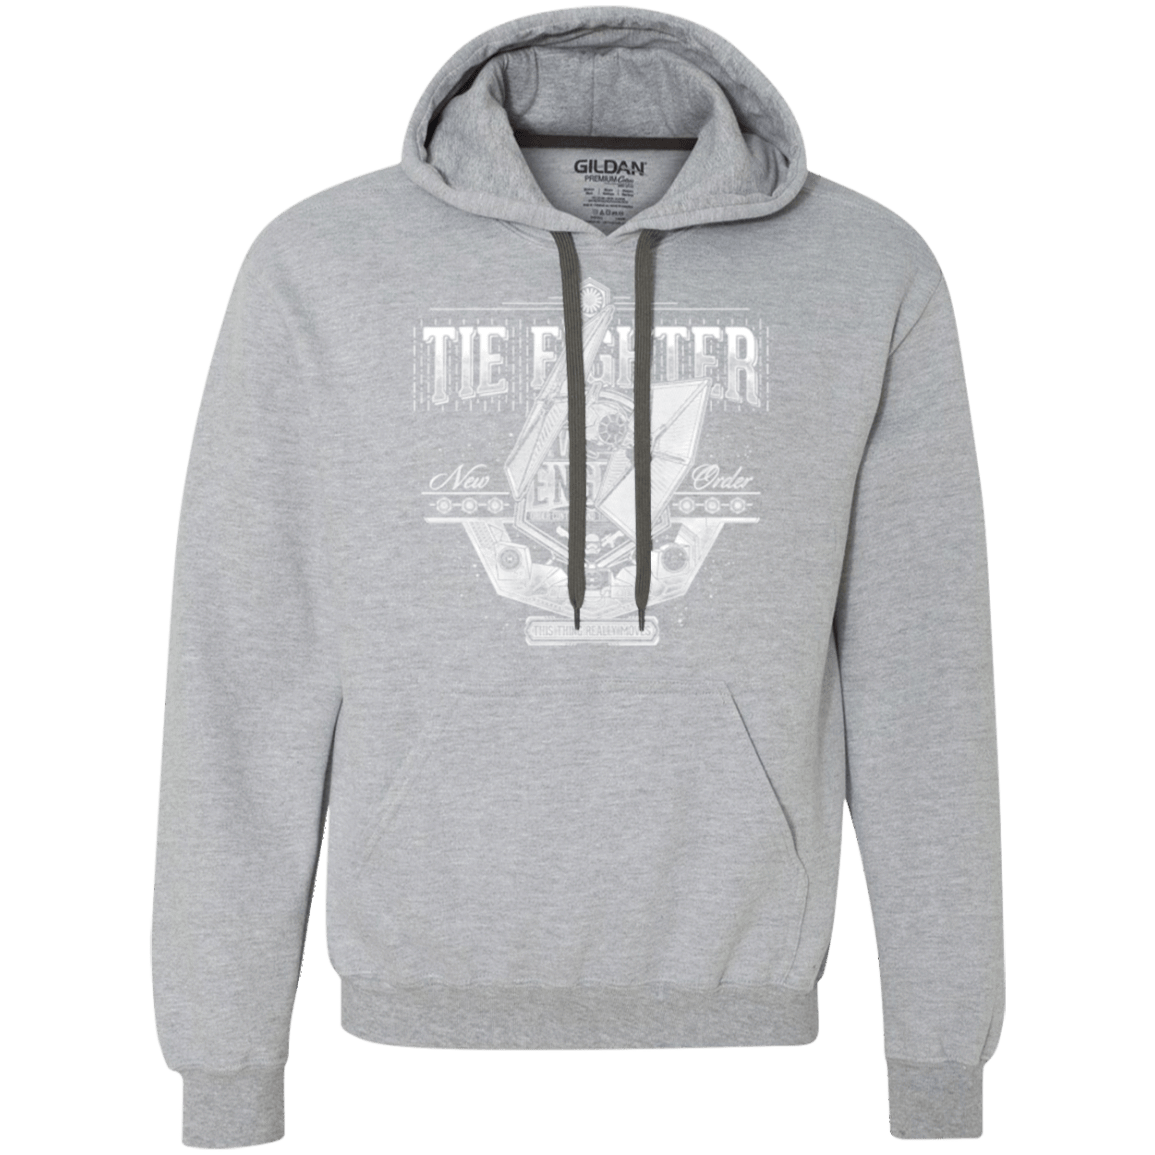 Sweatshirts Sport Grey / Small New Order Premium Fleece Hoodie